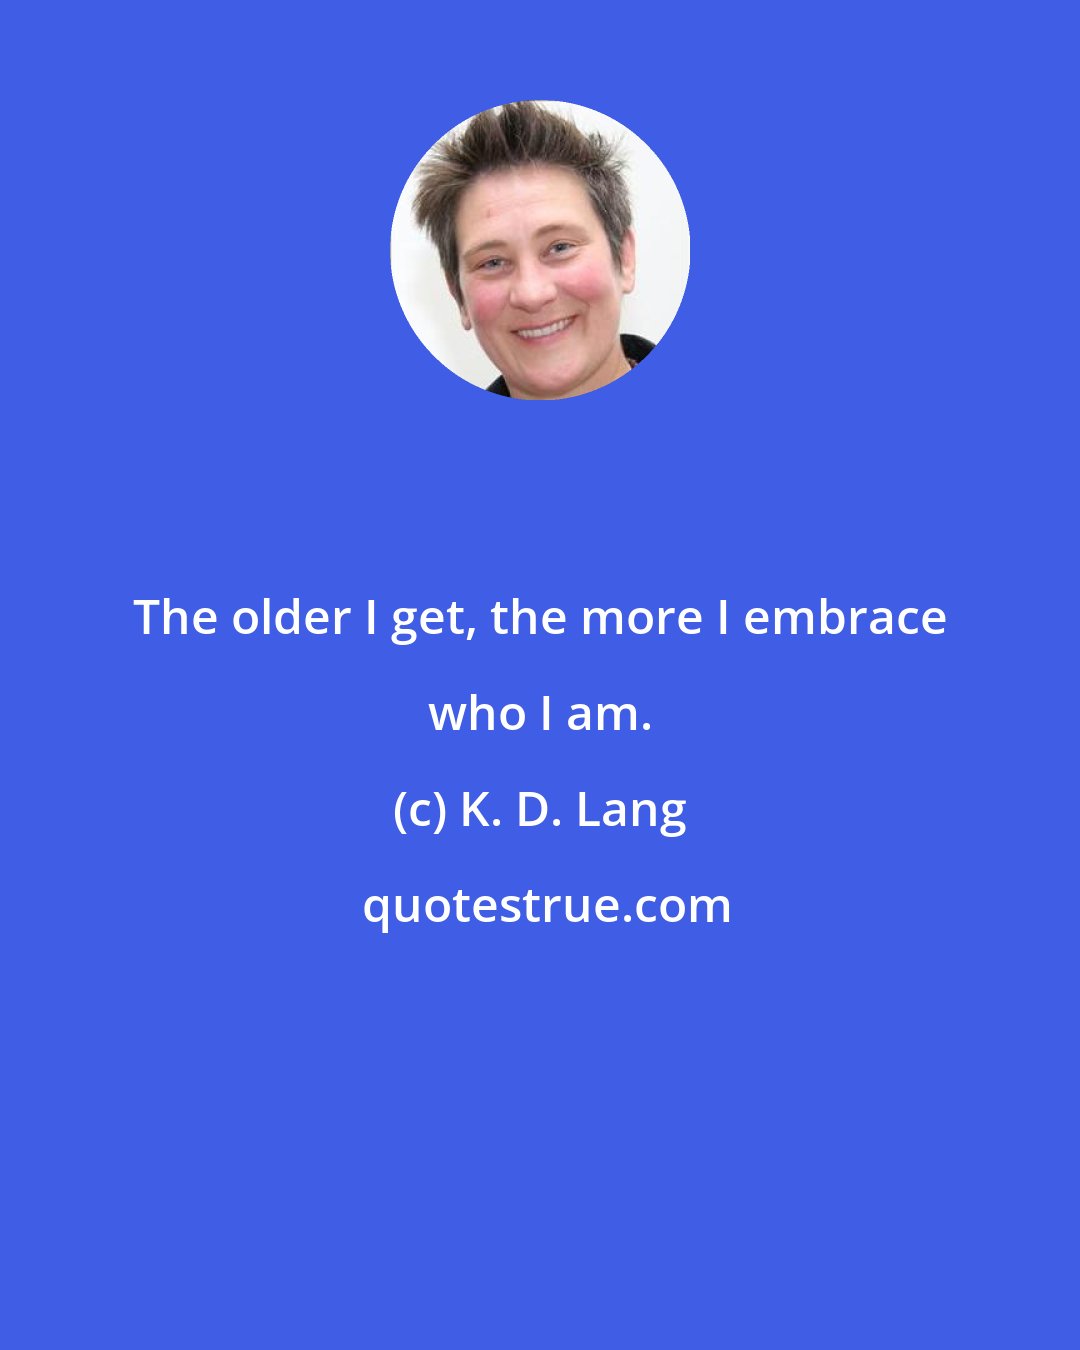 K. D. Lang: The older I get, the more I embrace who I am.